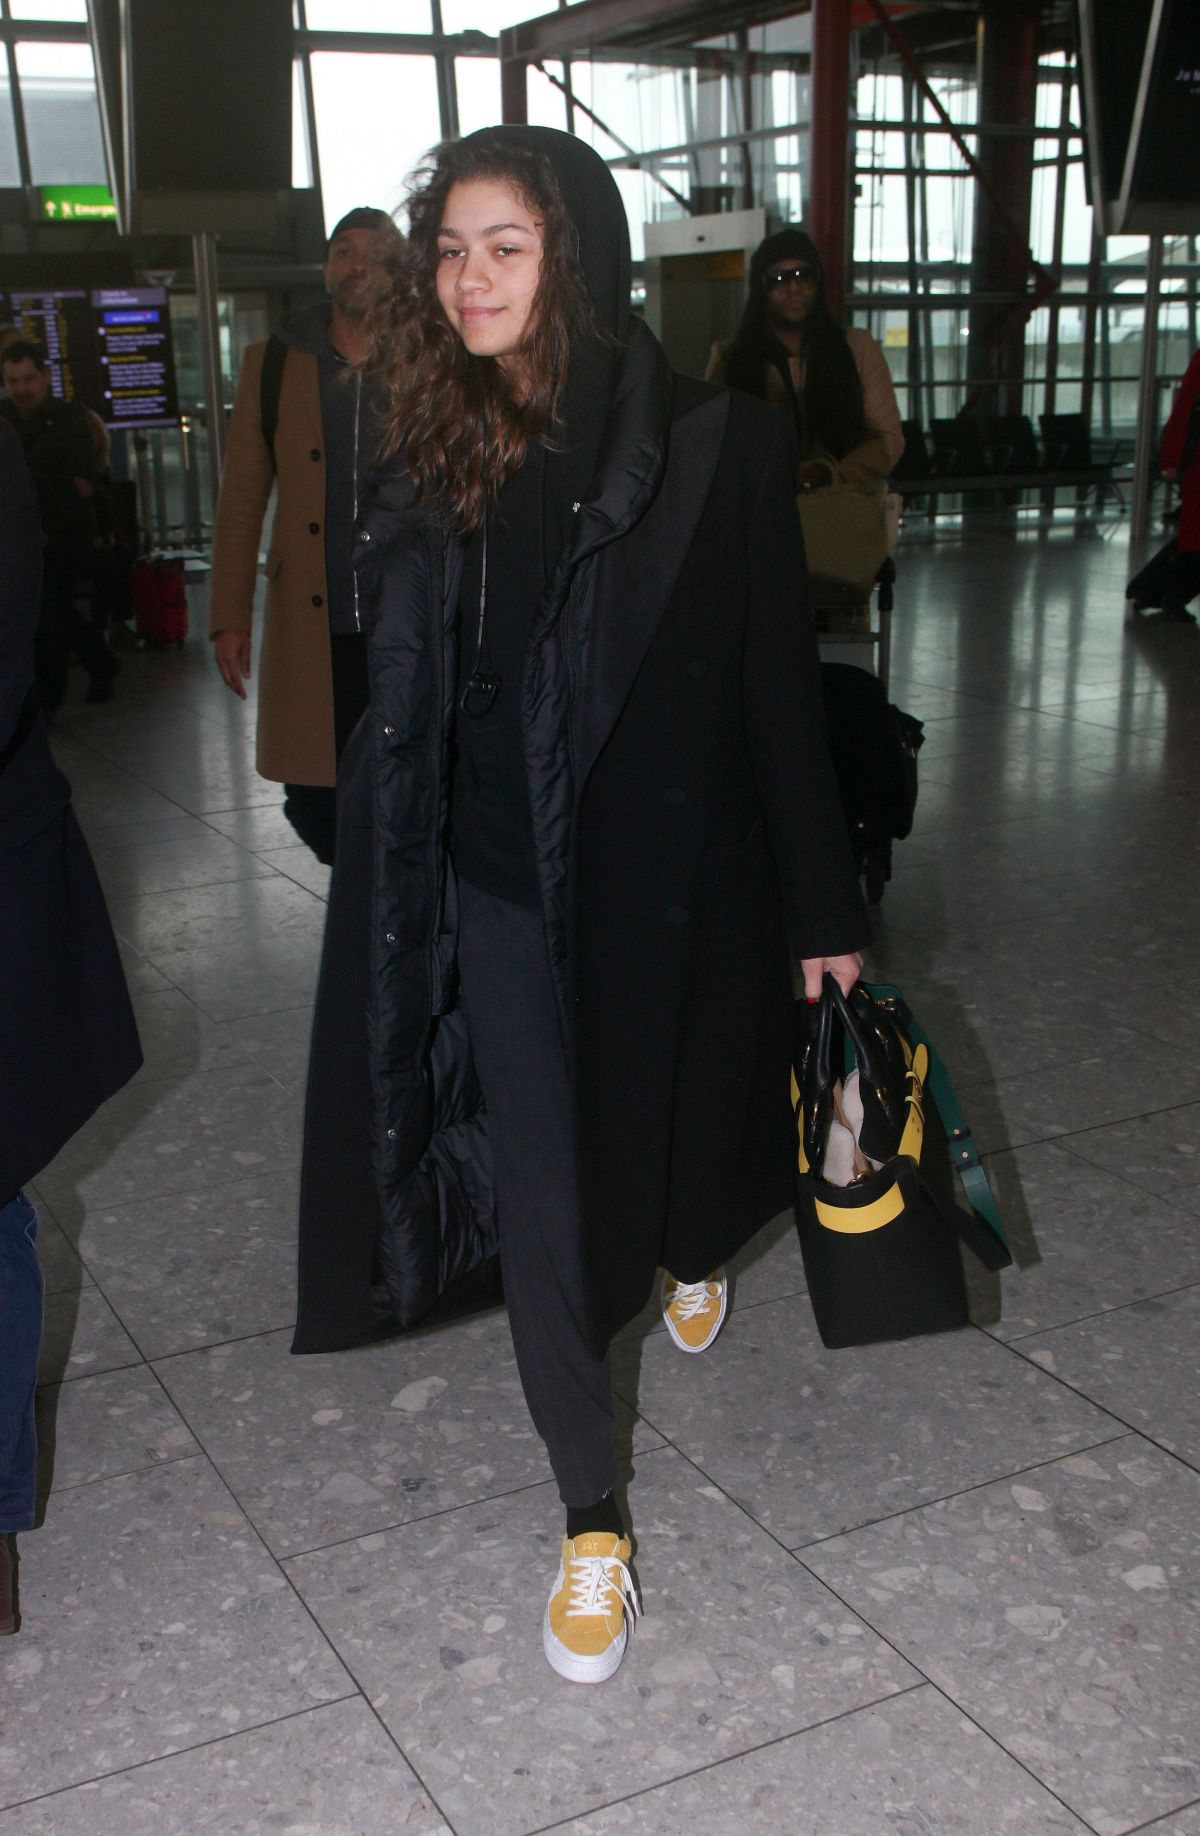 ZENDAYA COLEMAN Arrives at Heathrow Airport in London 02/19/2018 ...